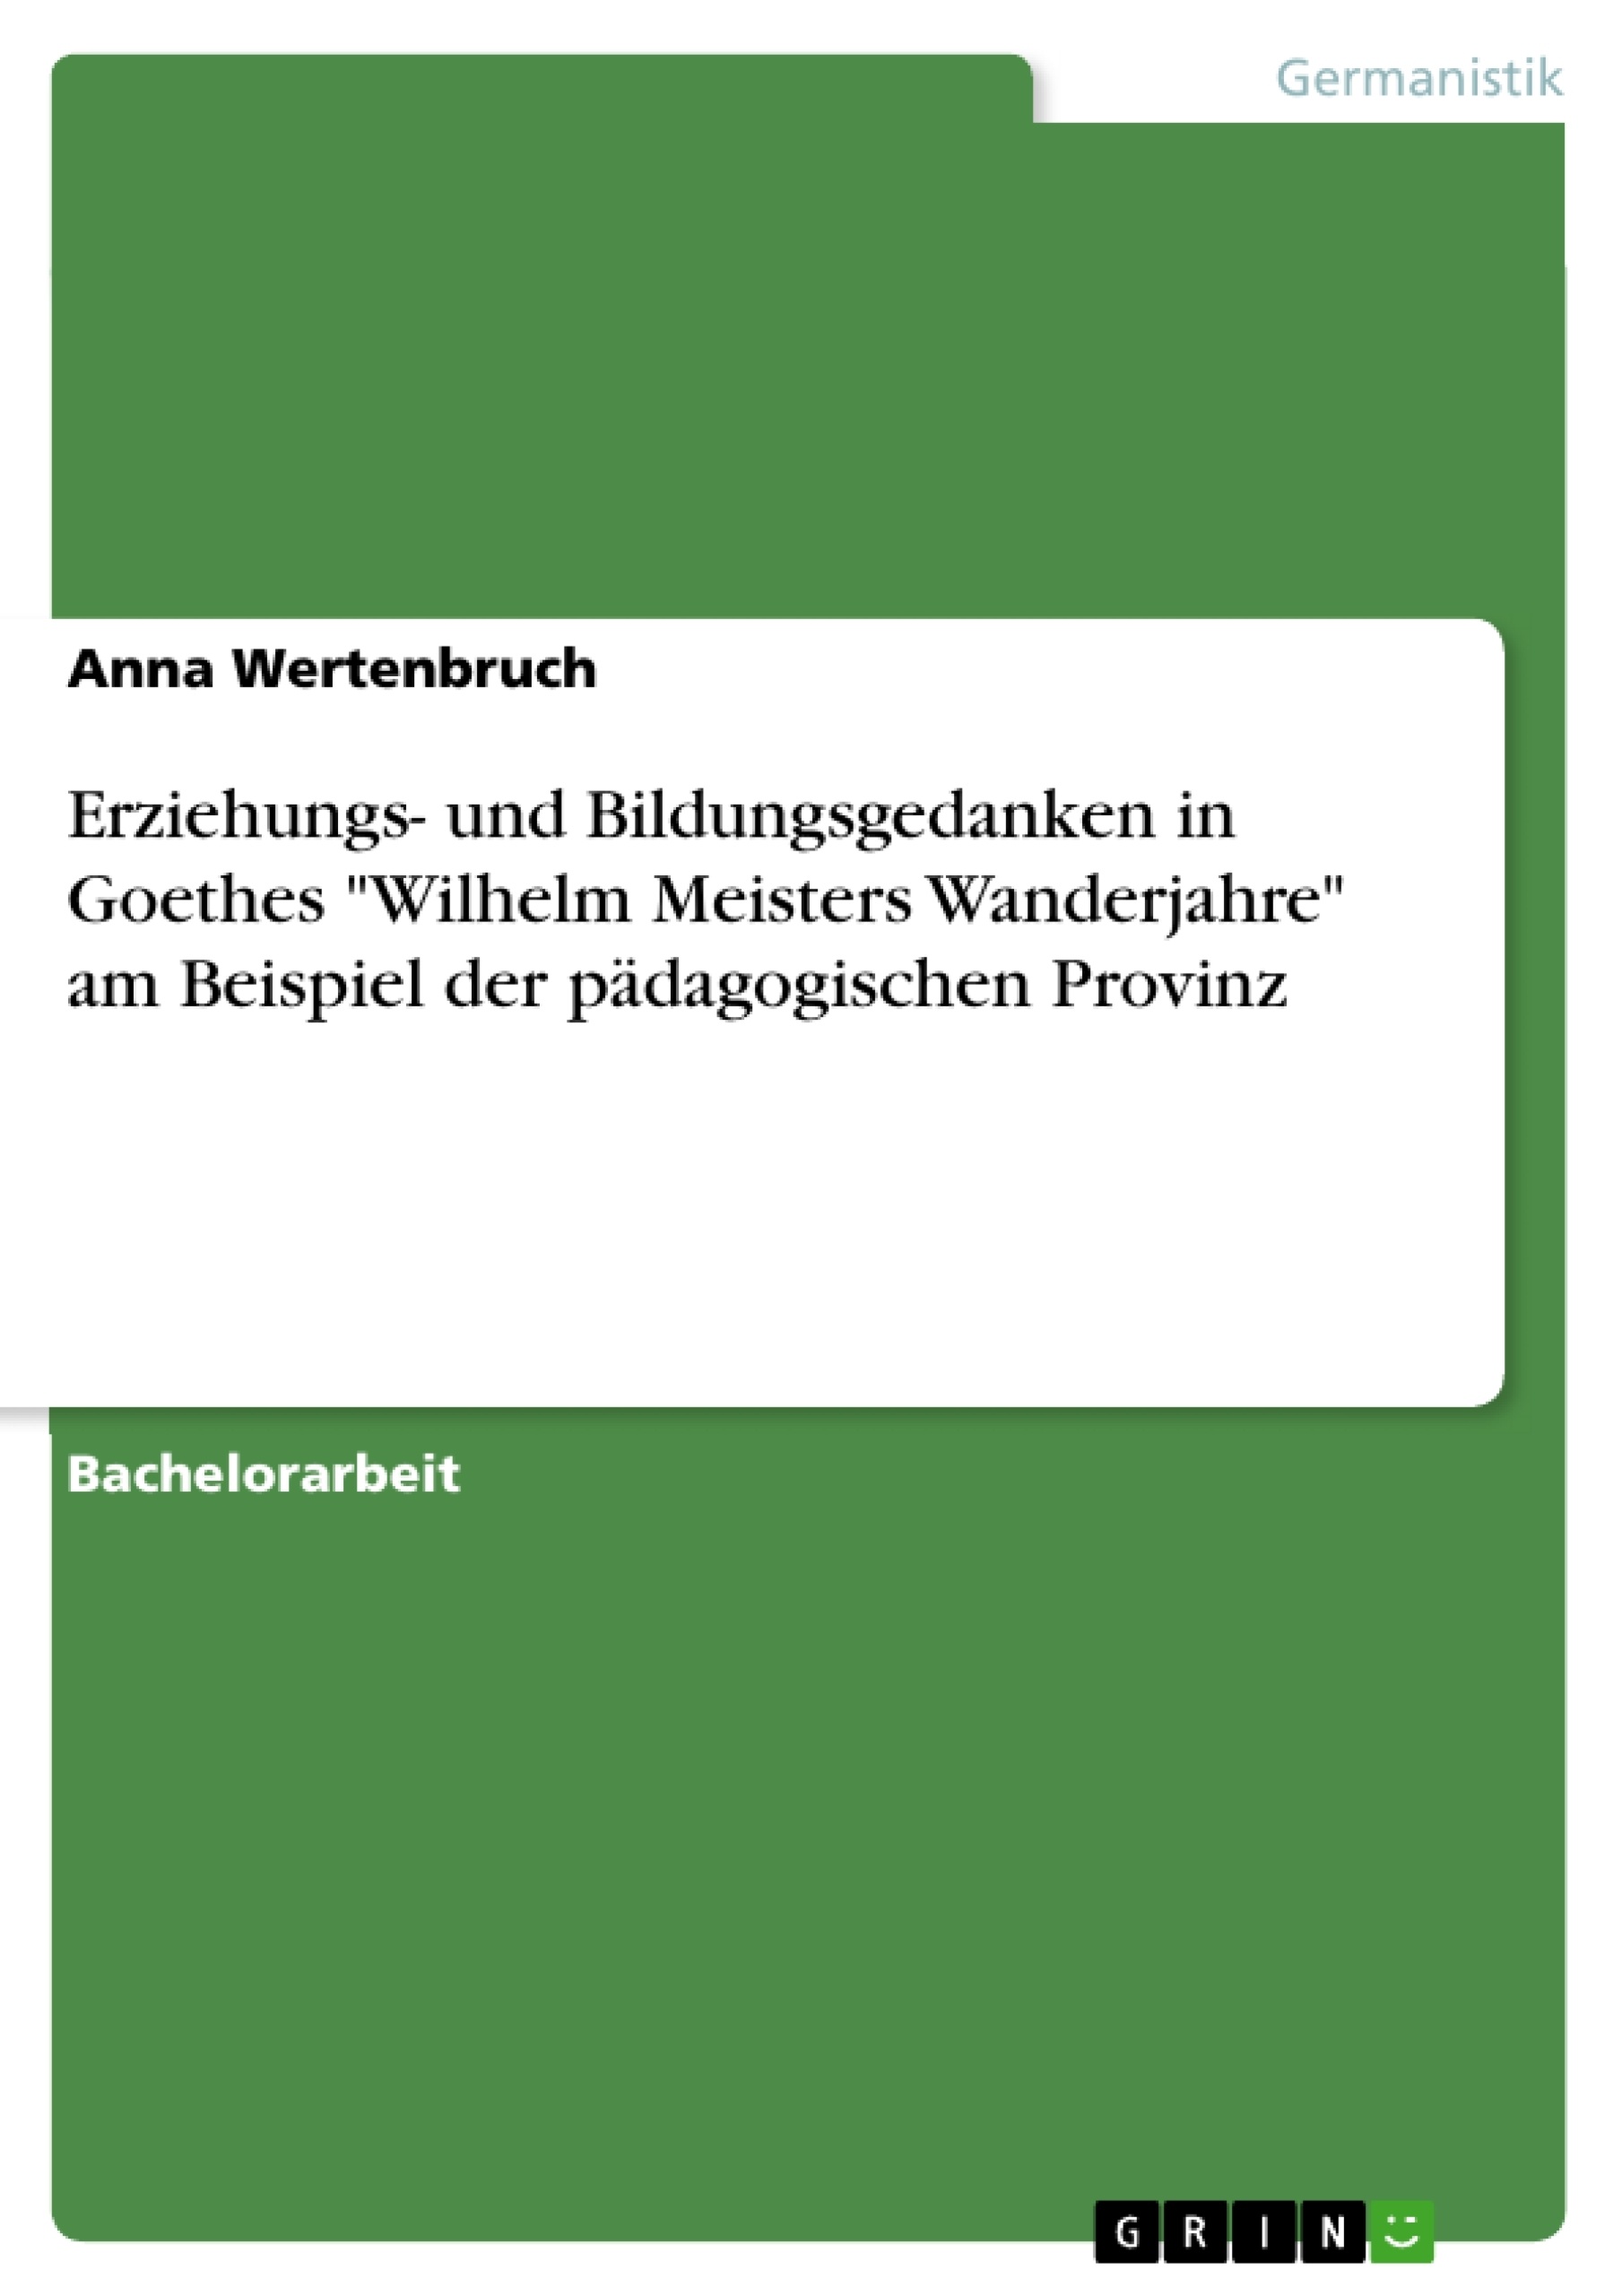 Titel: Erziehungs- und Bildungsgedanken in Goethes "Wilhelm Meisters Wanderjahre" am Beispiel der pädagogischen Provinz 